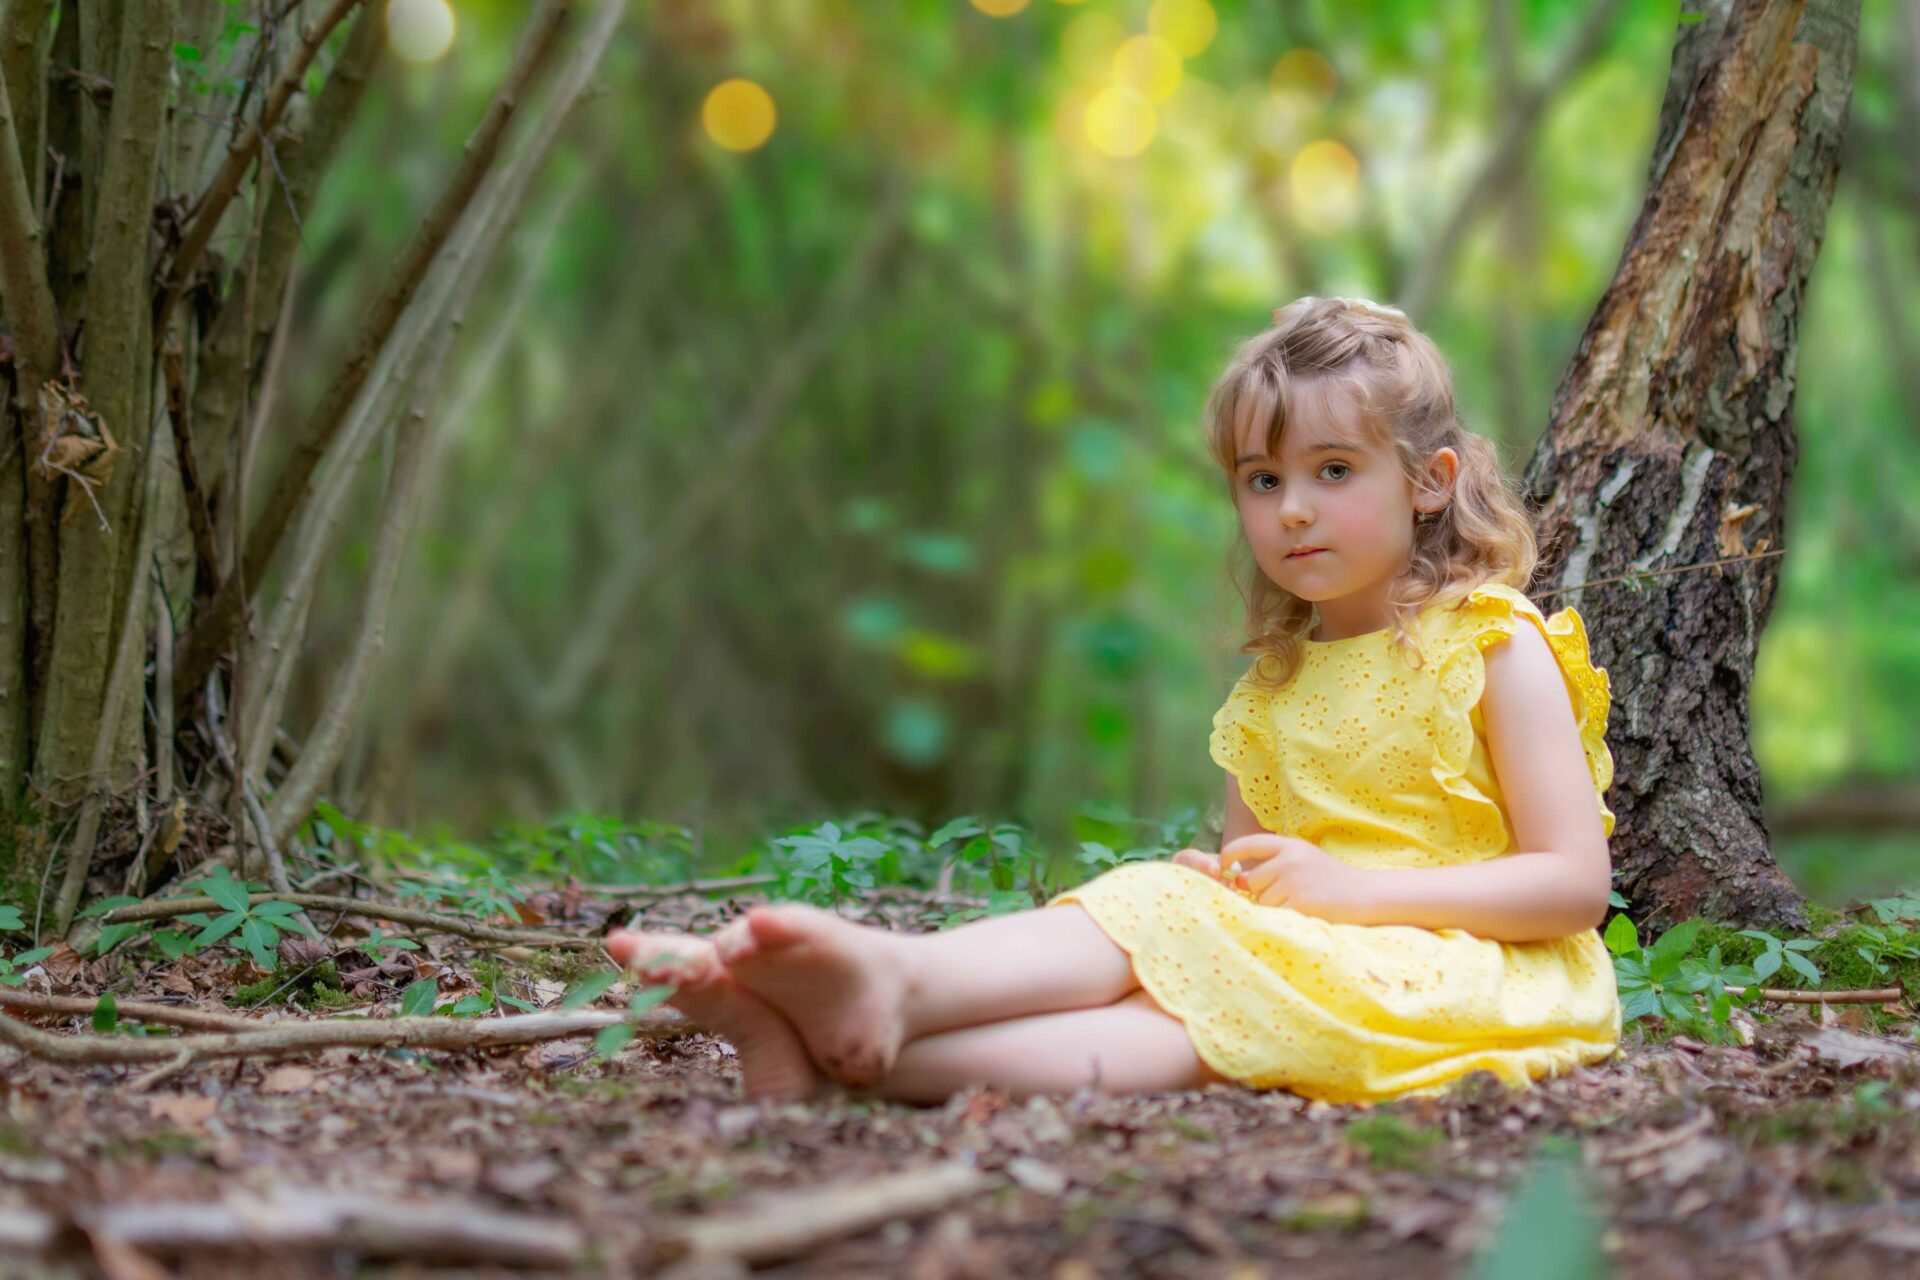 fairytale children photography in brighton